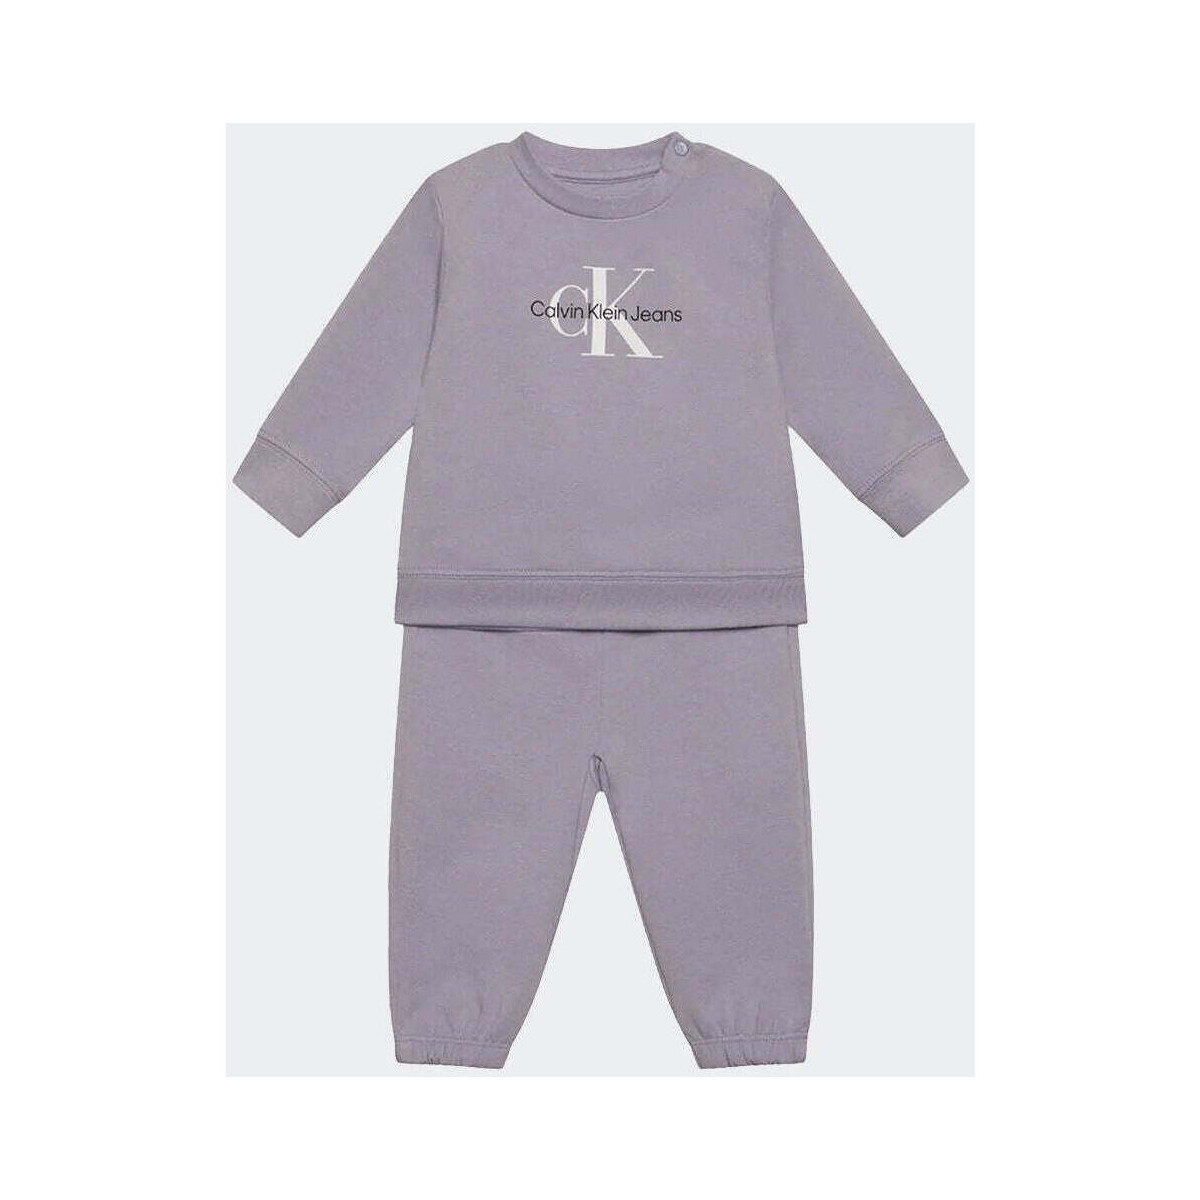 Vêtements Enfant Ensembles de survêtement Calvin Klein Jeans  Violet